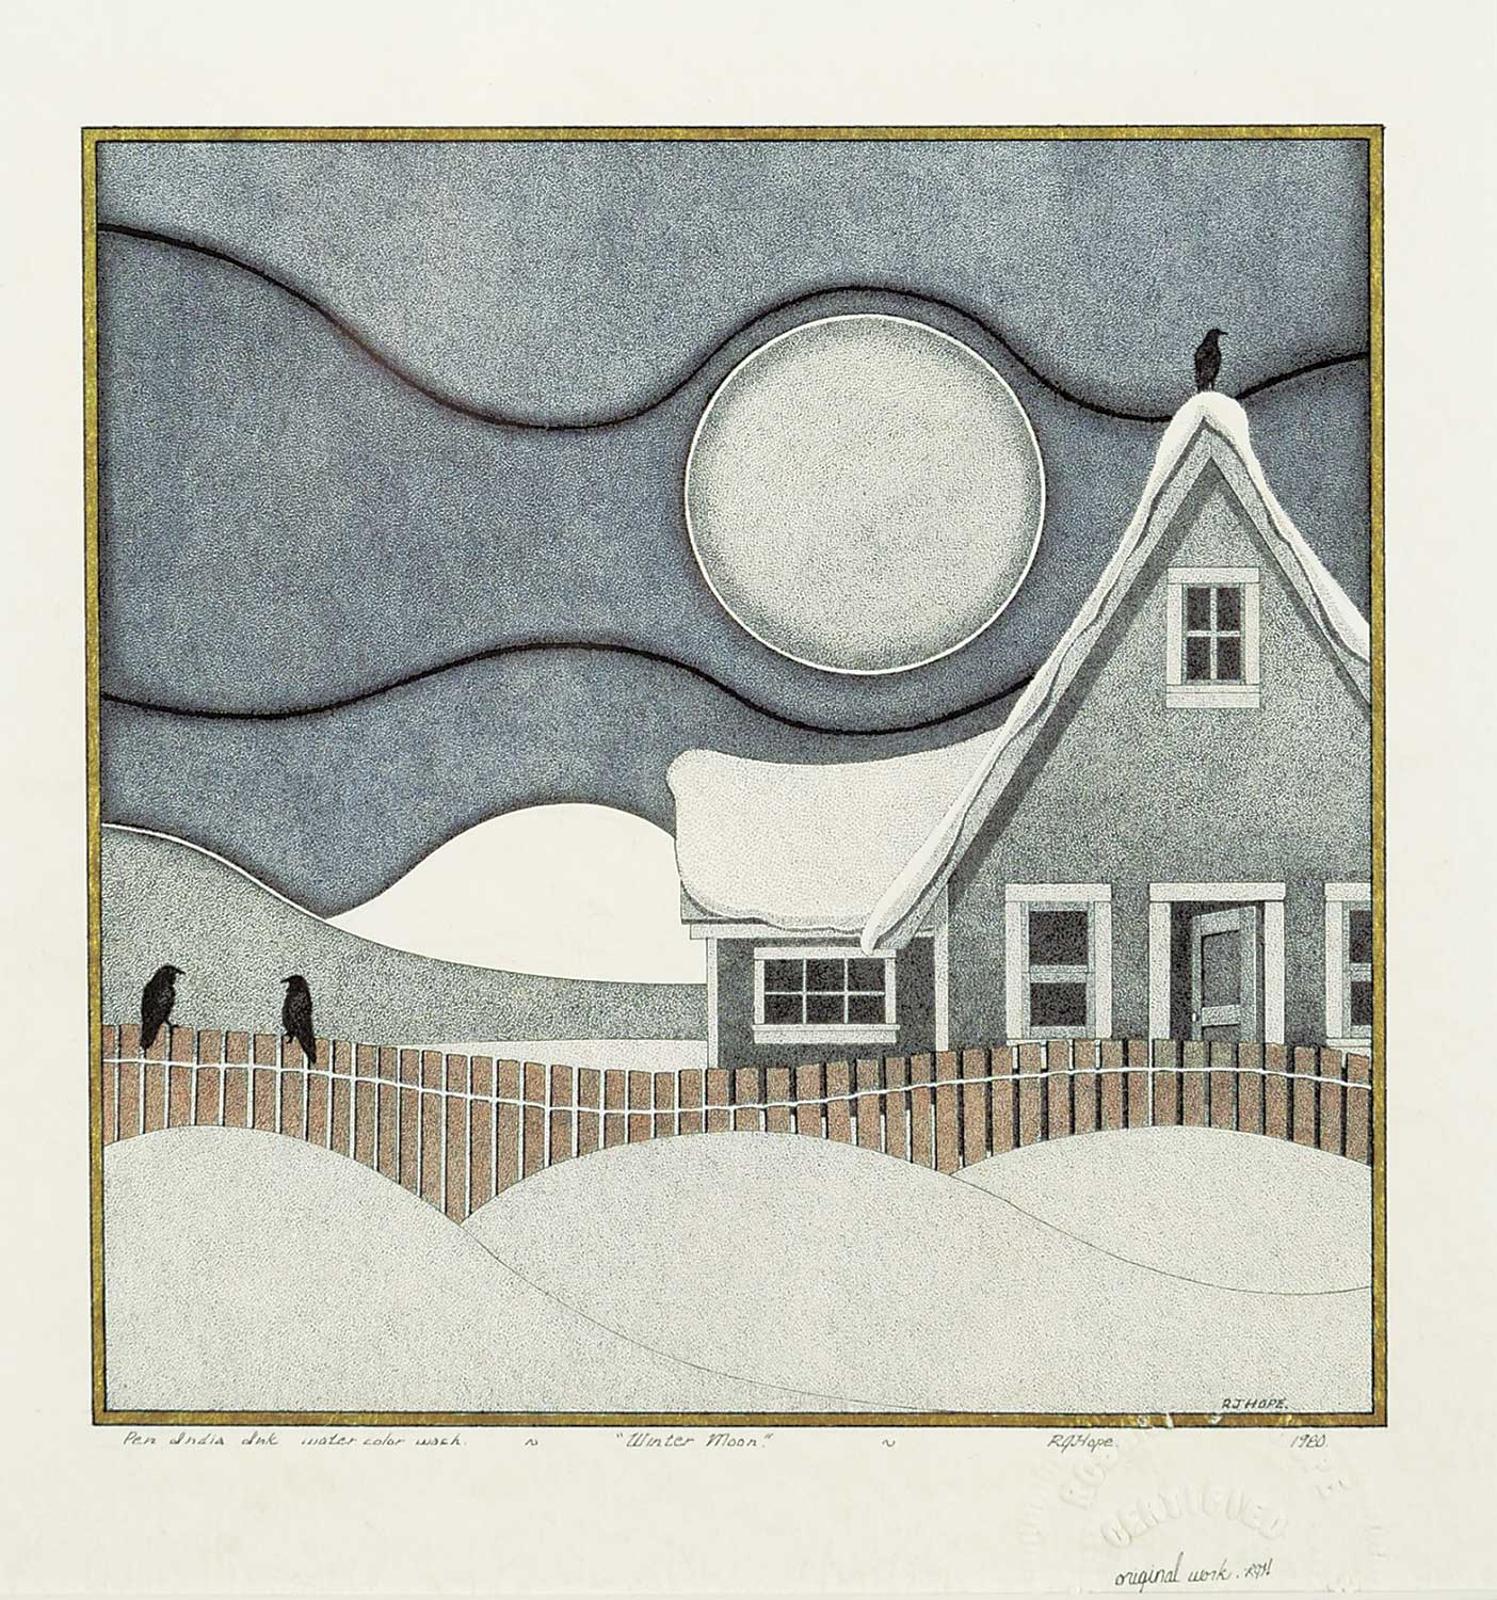 Robert John Hope (1948) - Winter Moon